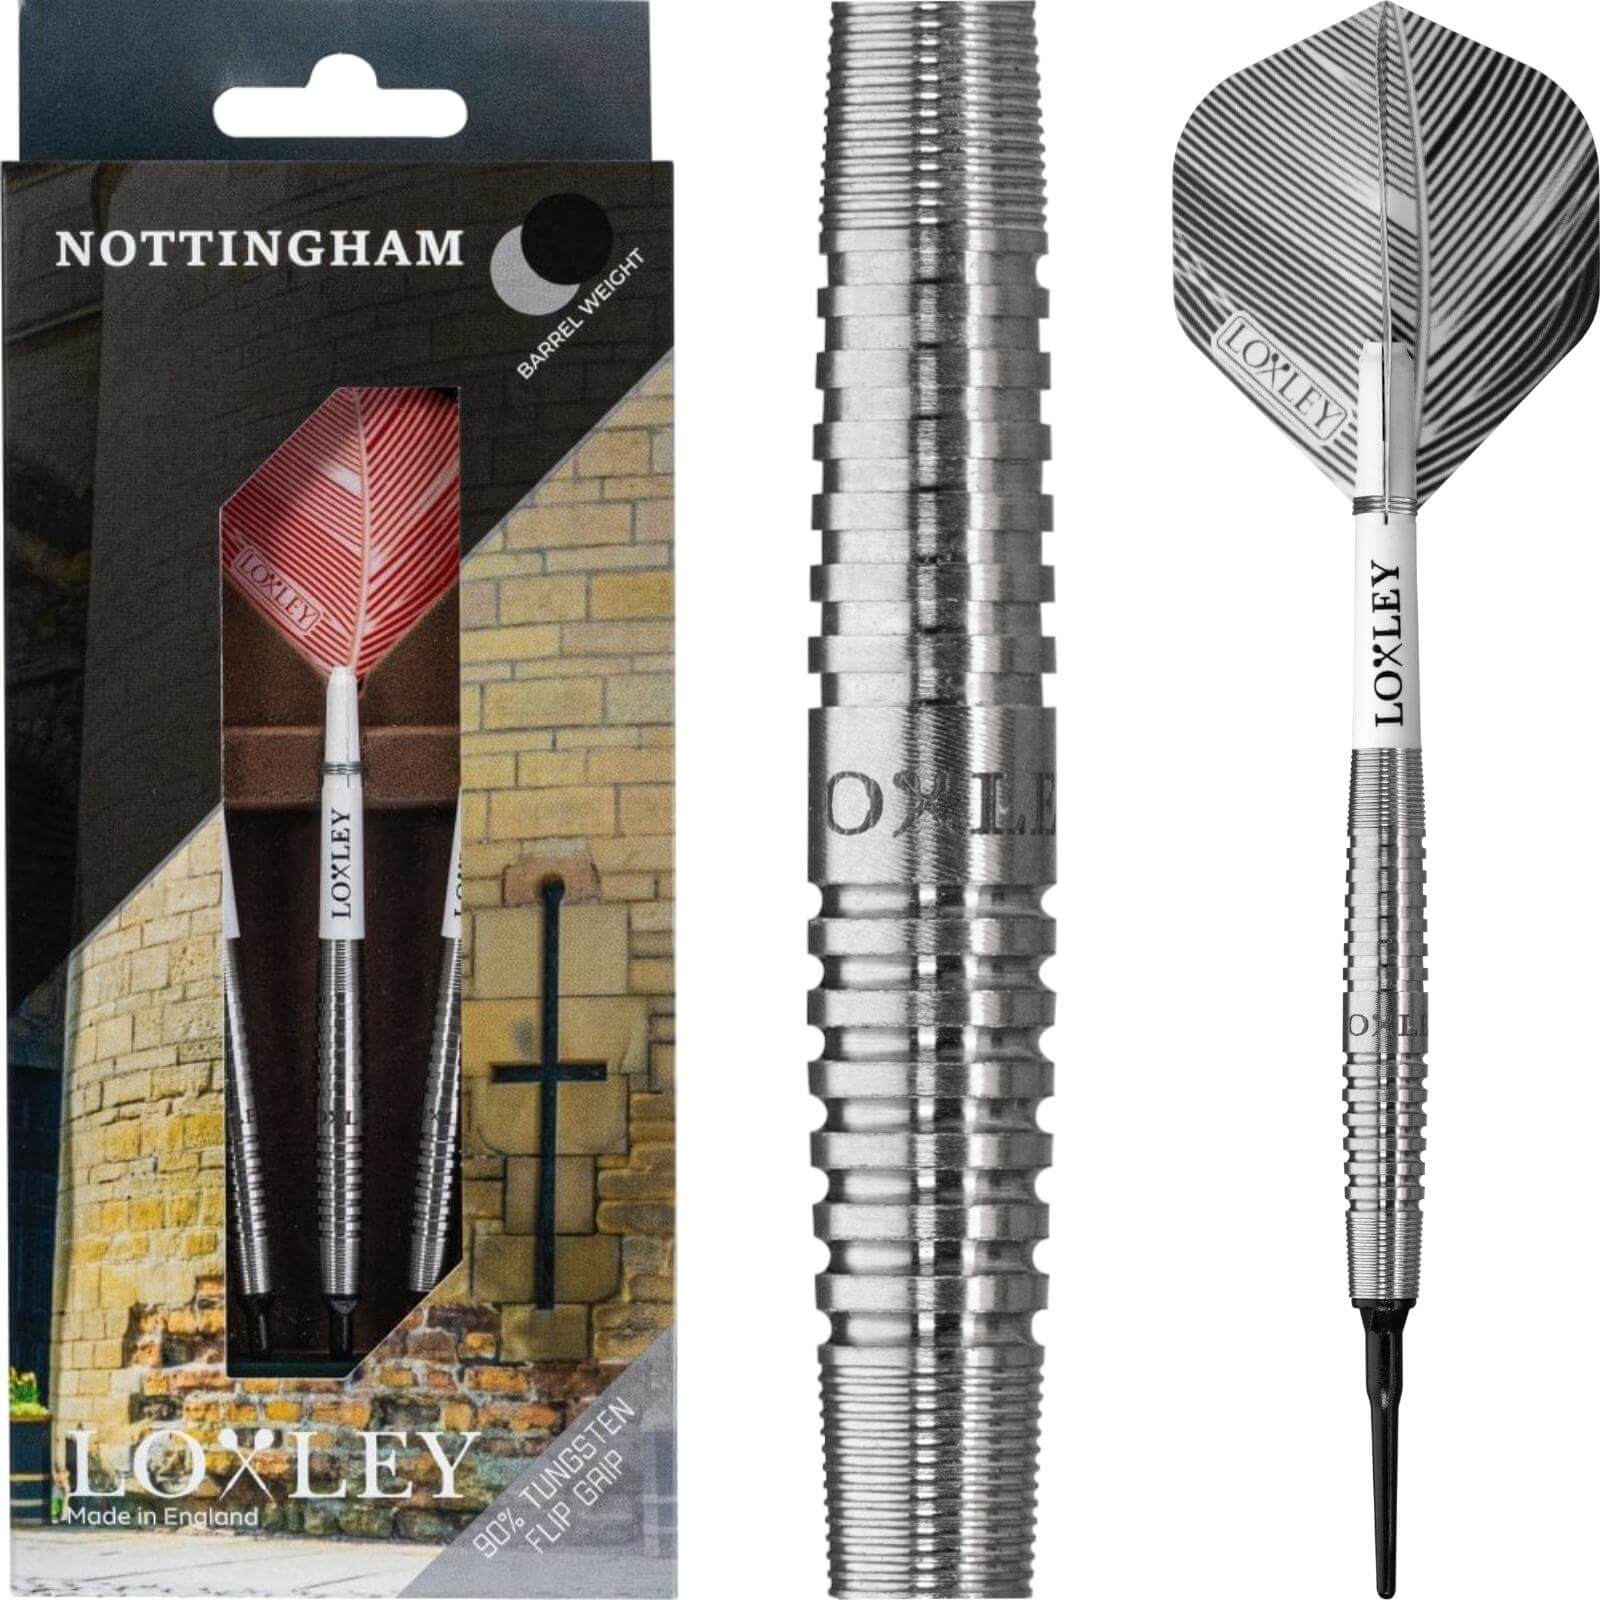 Darts - Loxley - Nottingham Darts - Flip Grip - Soft Tip - 90% Tungsten - 18g 